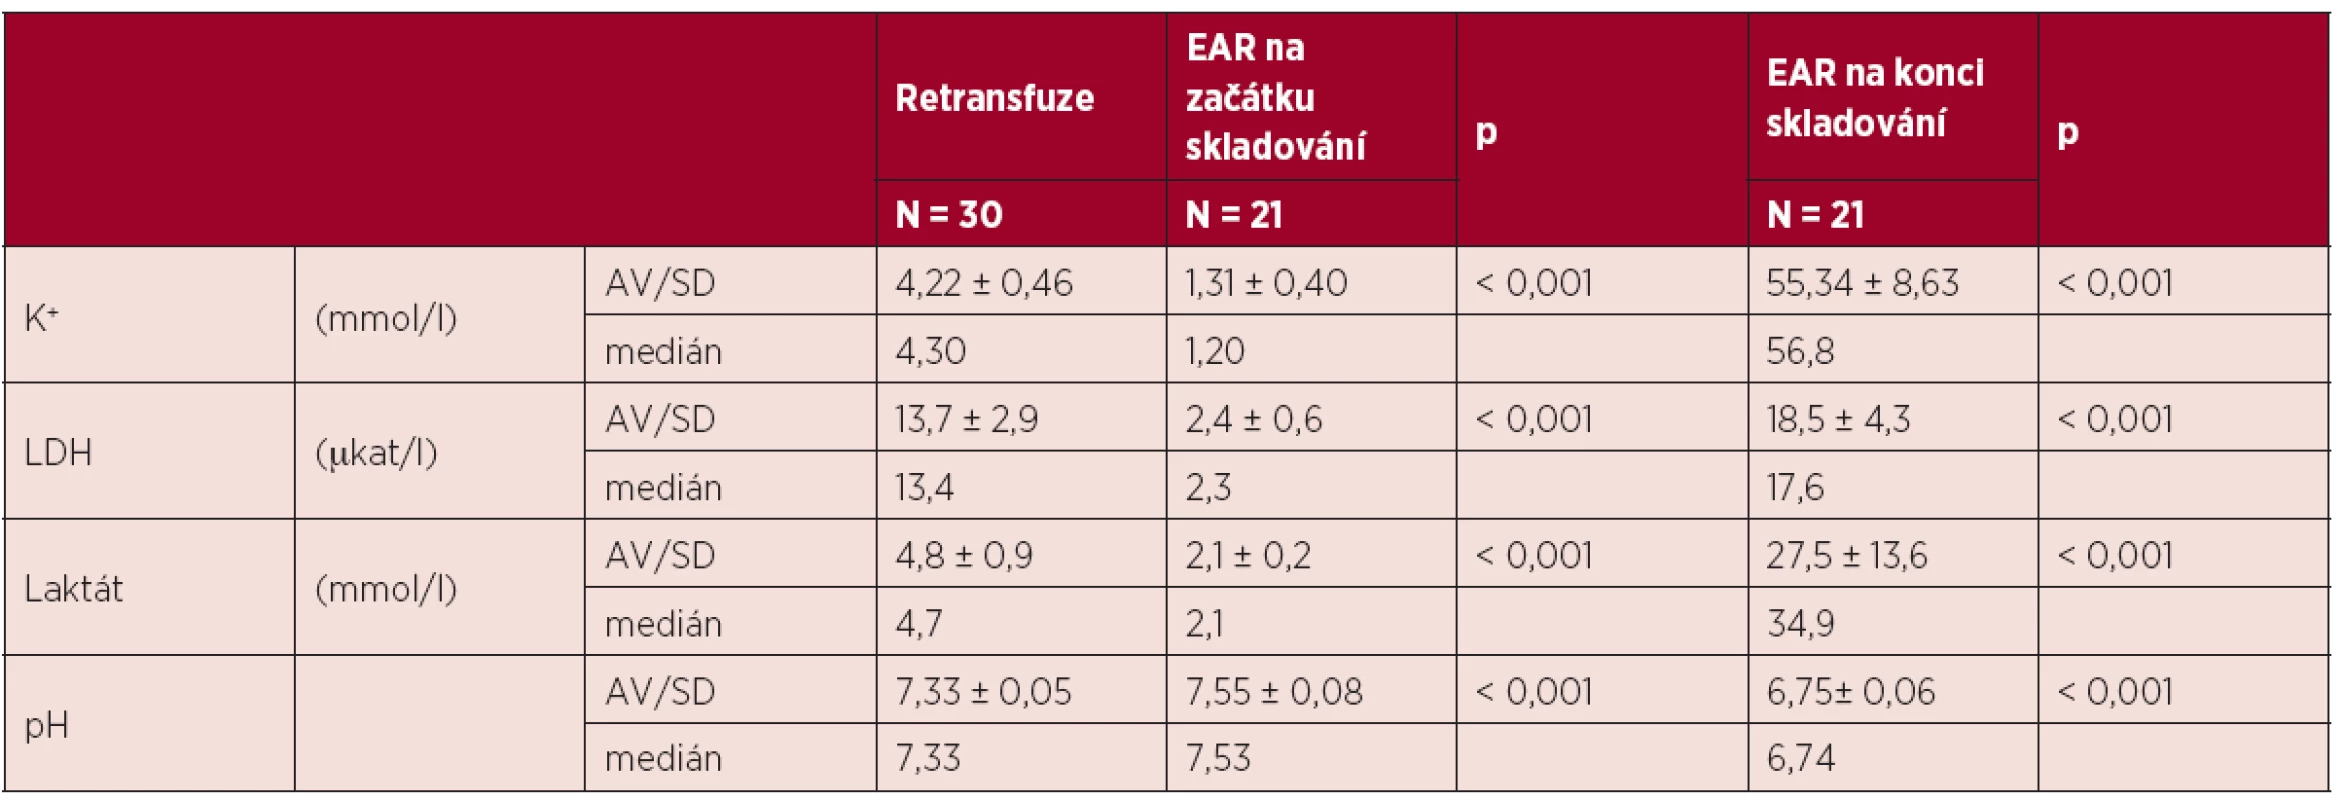 Porovnání markerů buněčného poškození erytrocytu retransfuze a EAR na začátku a konci skladování.